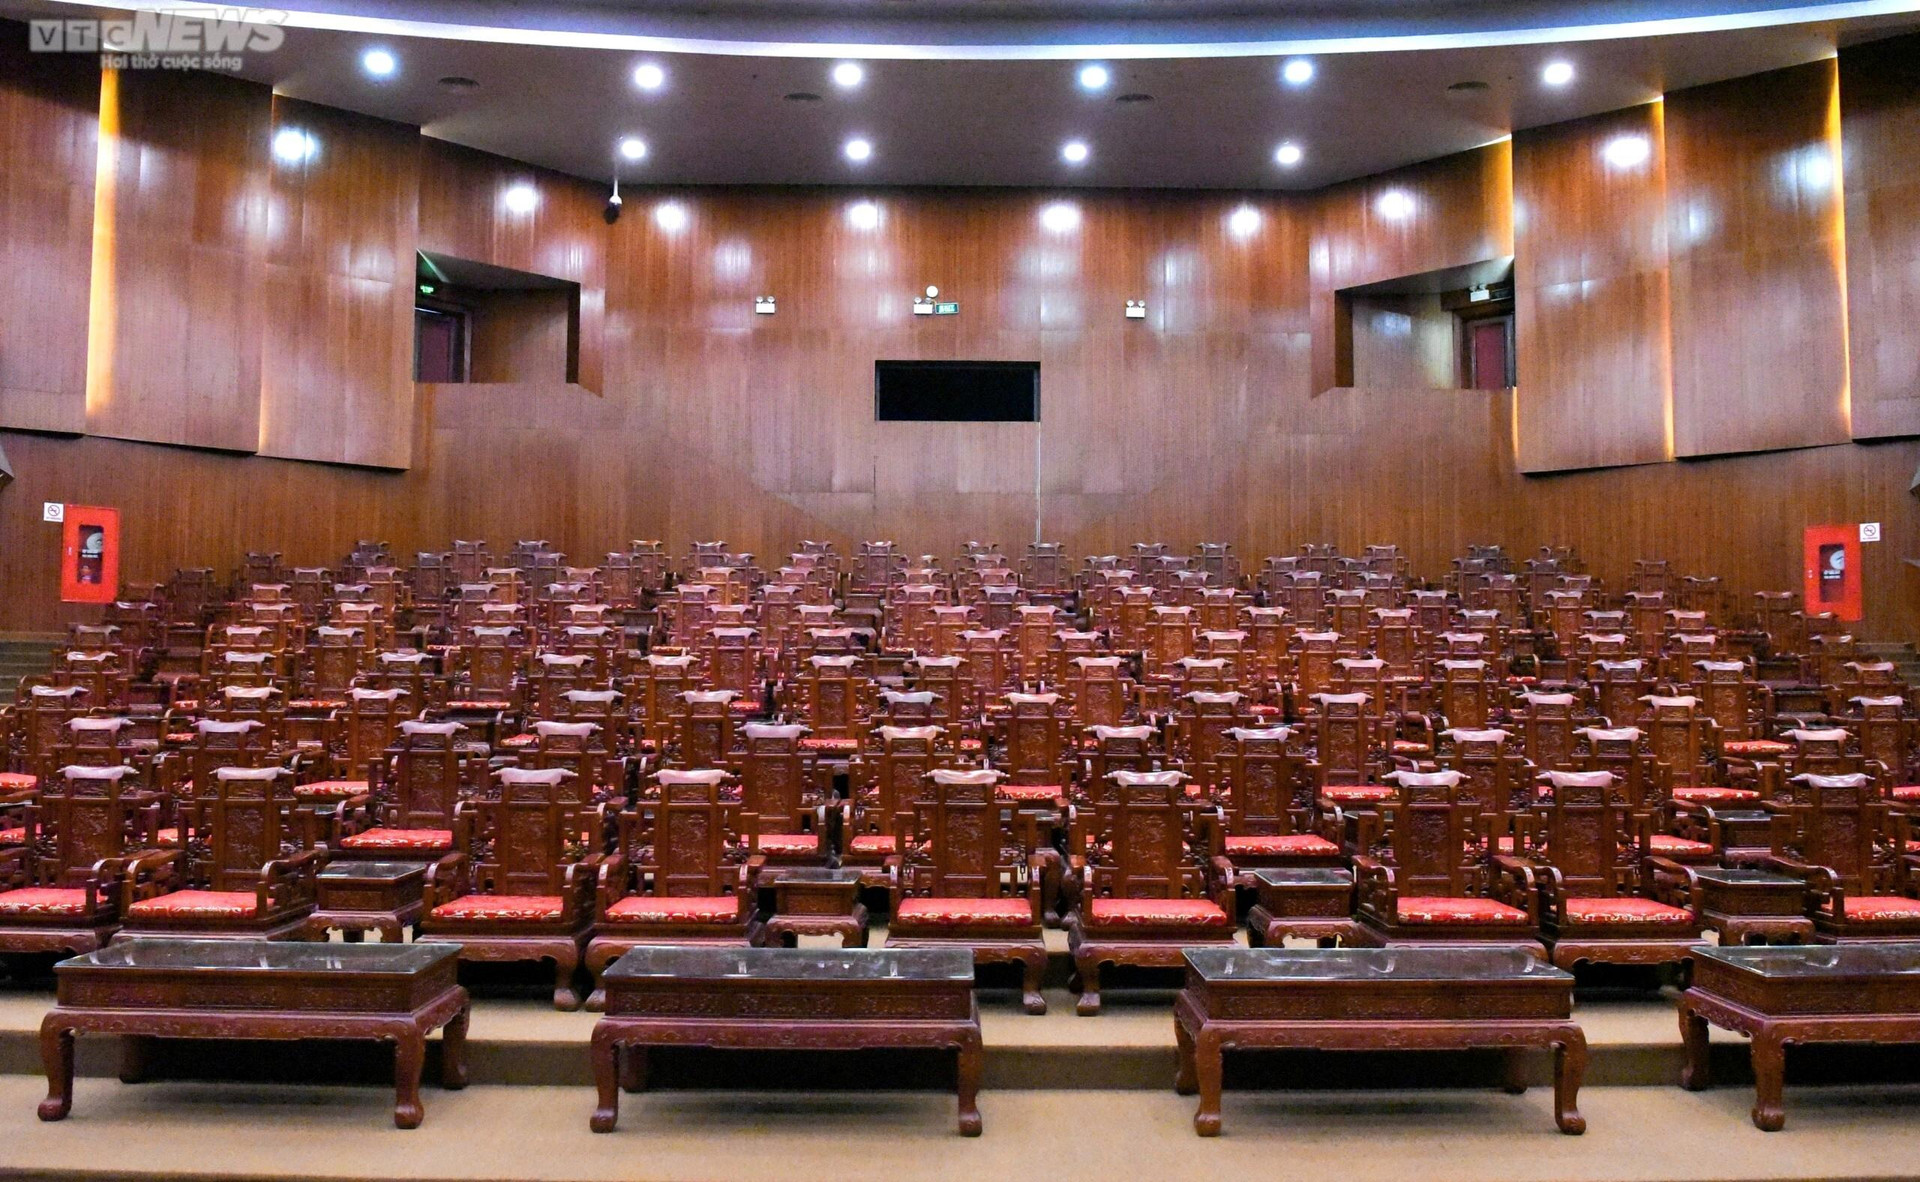 Bên trong khán phòng nhà hát có 341 bàn ghế Đồng Kỵ gây tranh cãi ở Bắc Ninh  - 10